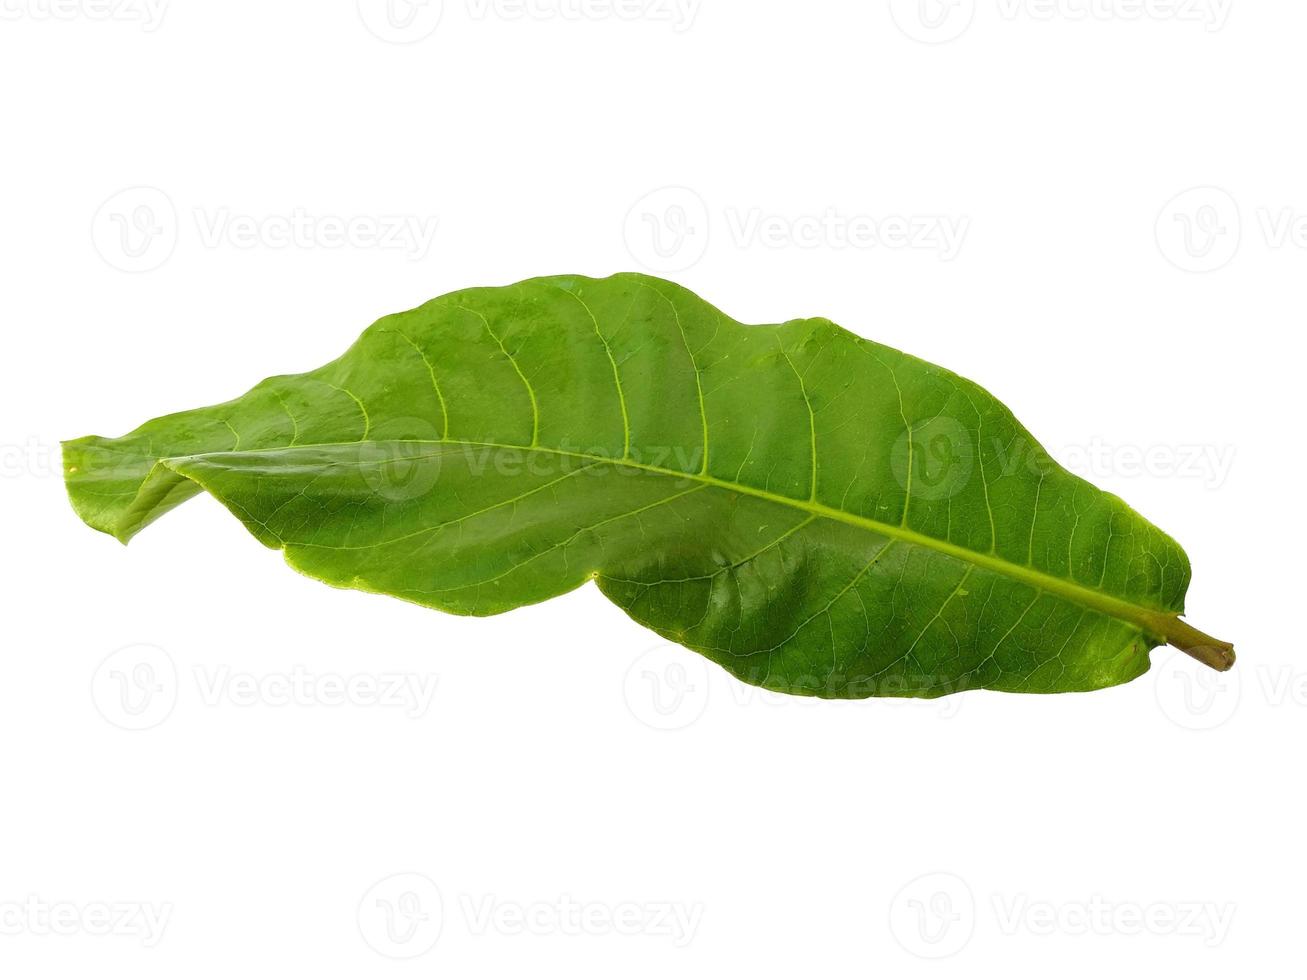 calotropis gigantea blad eller jätte calotrope blad isolerad på vit bakgrund foto